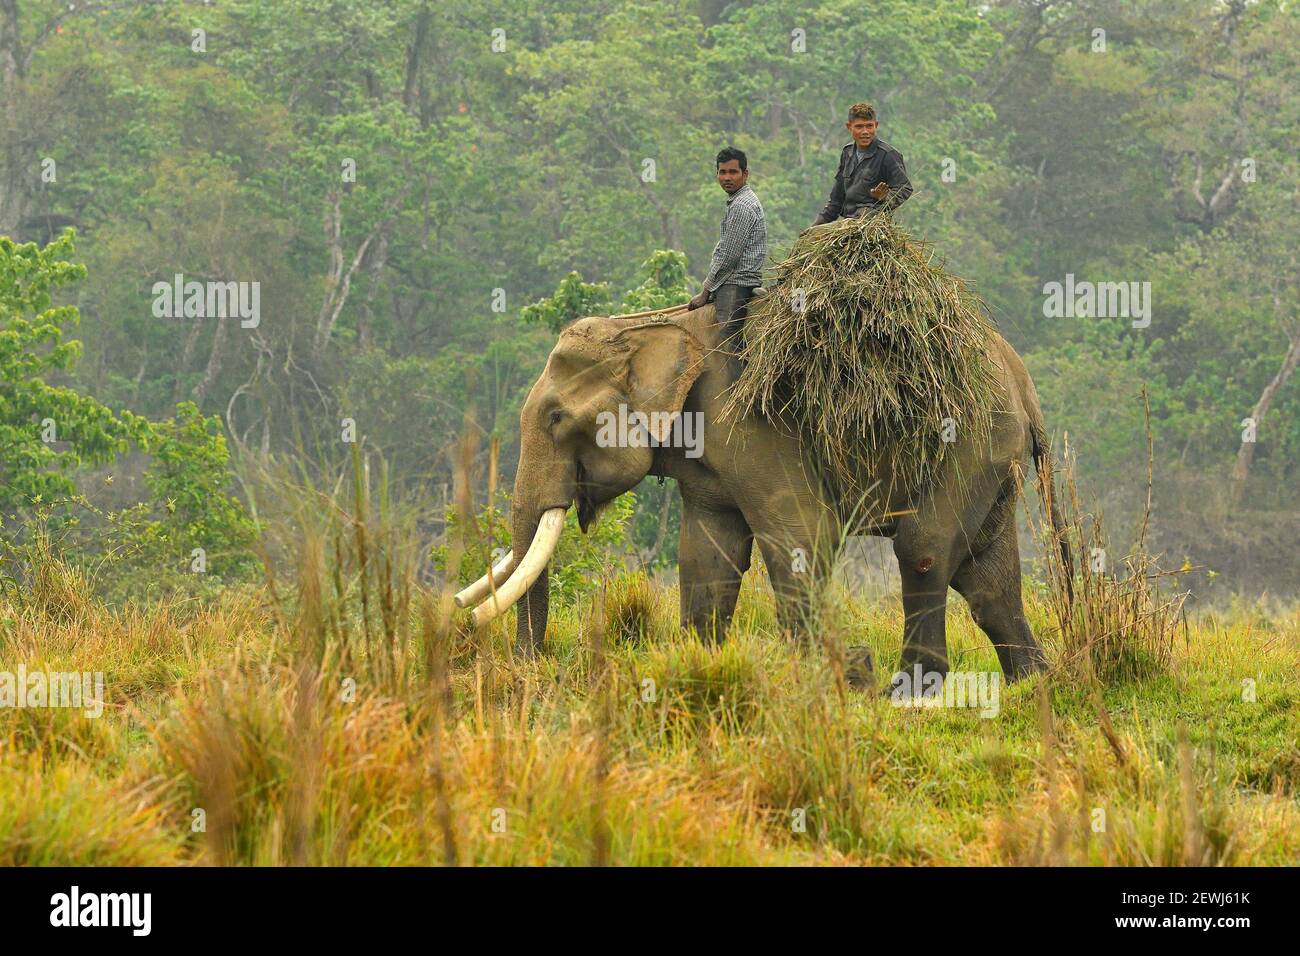 Elefante asiatico, Elephas maximus, con mahout che porta erba per il foraggio dalla zona tampone, Chitwan National Park, Nepal Foto Stock